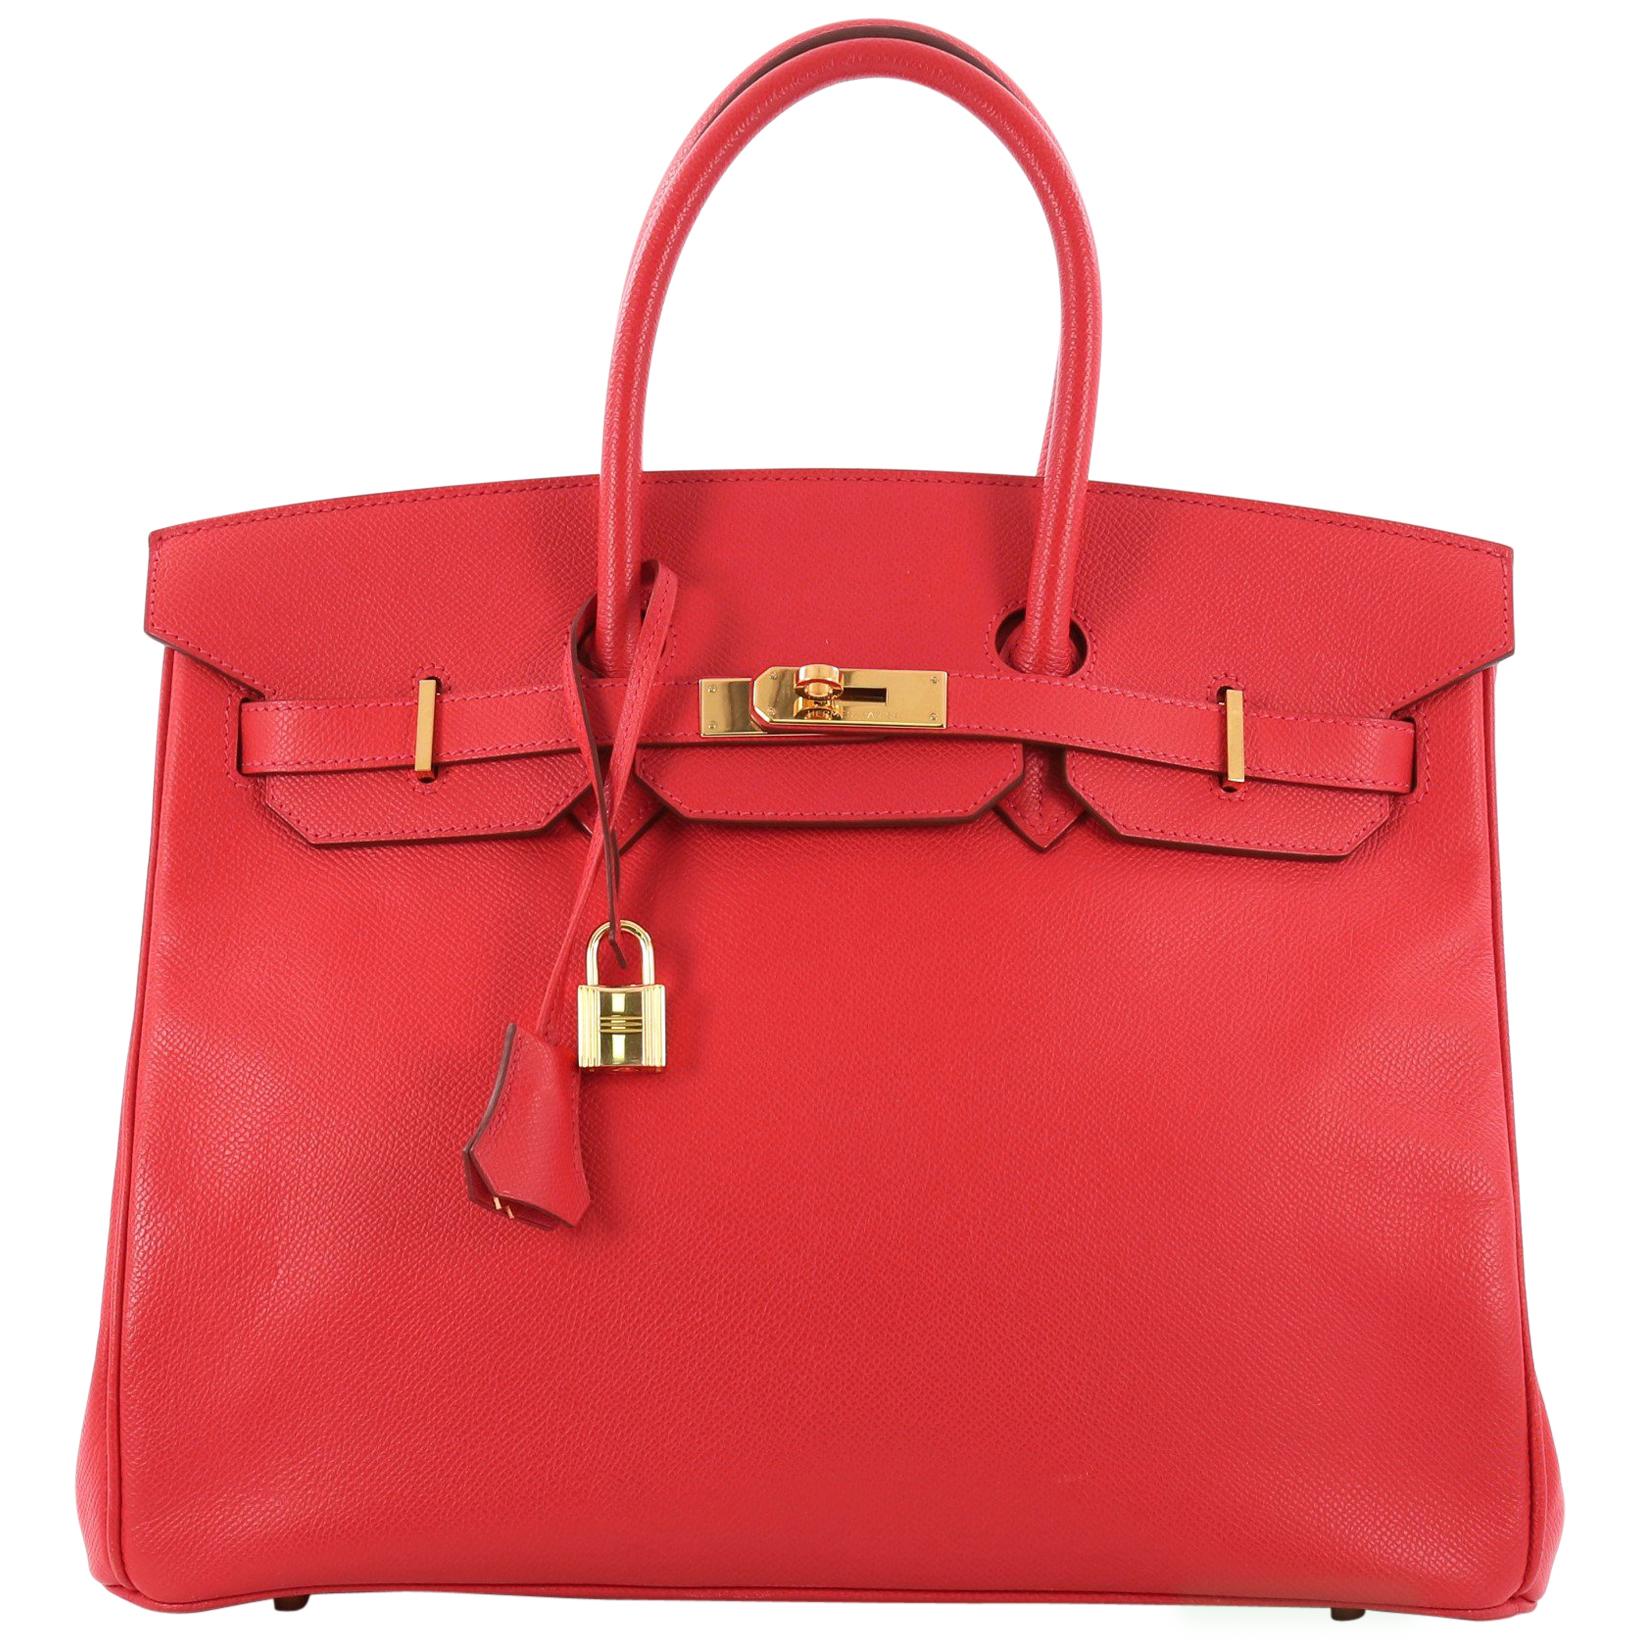 Hermes Birkin Handbag Rouge Vif Epsom with Gold Hardware 35